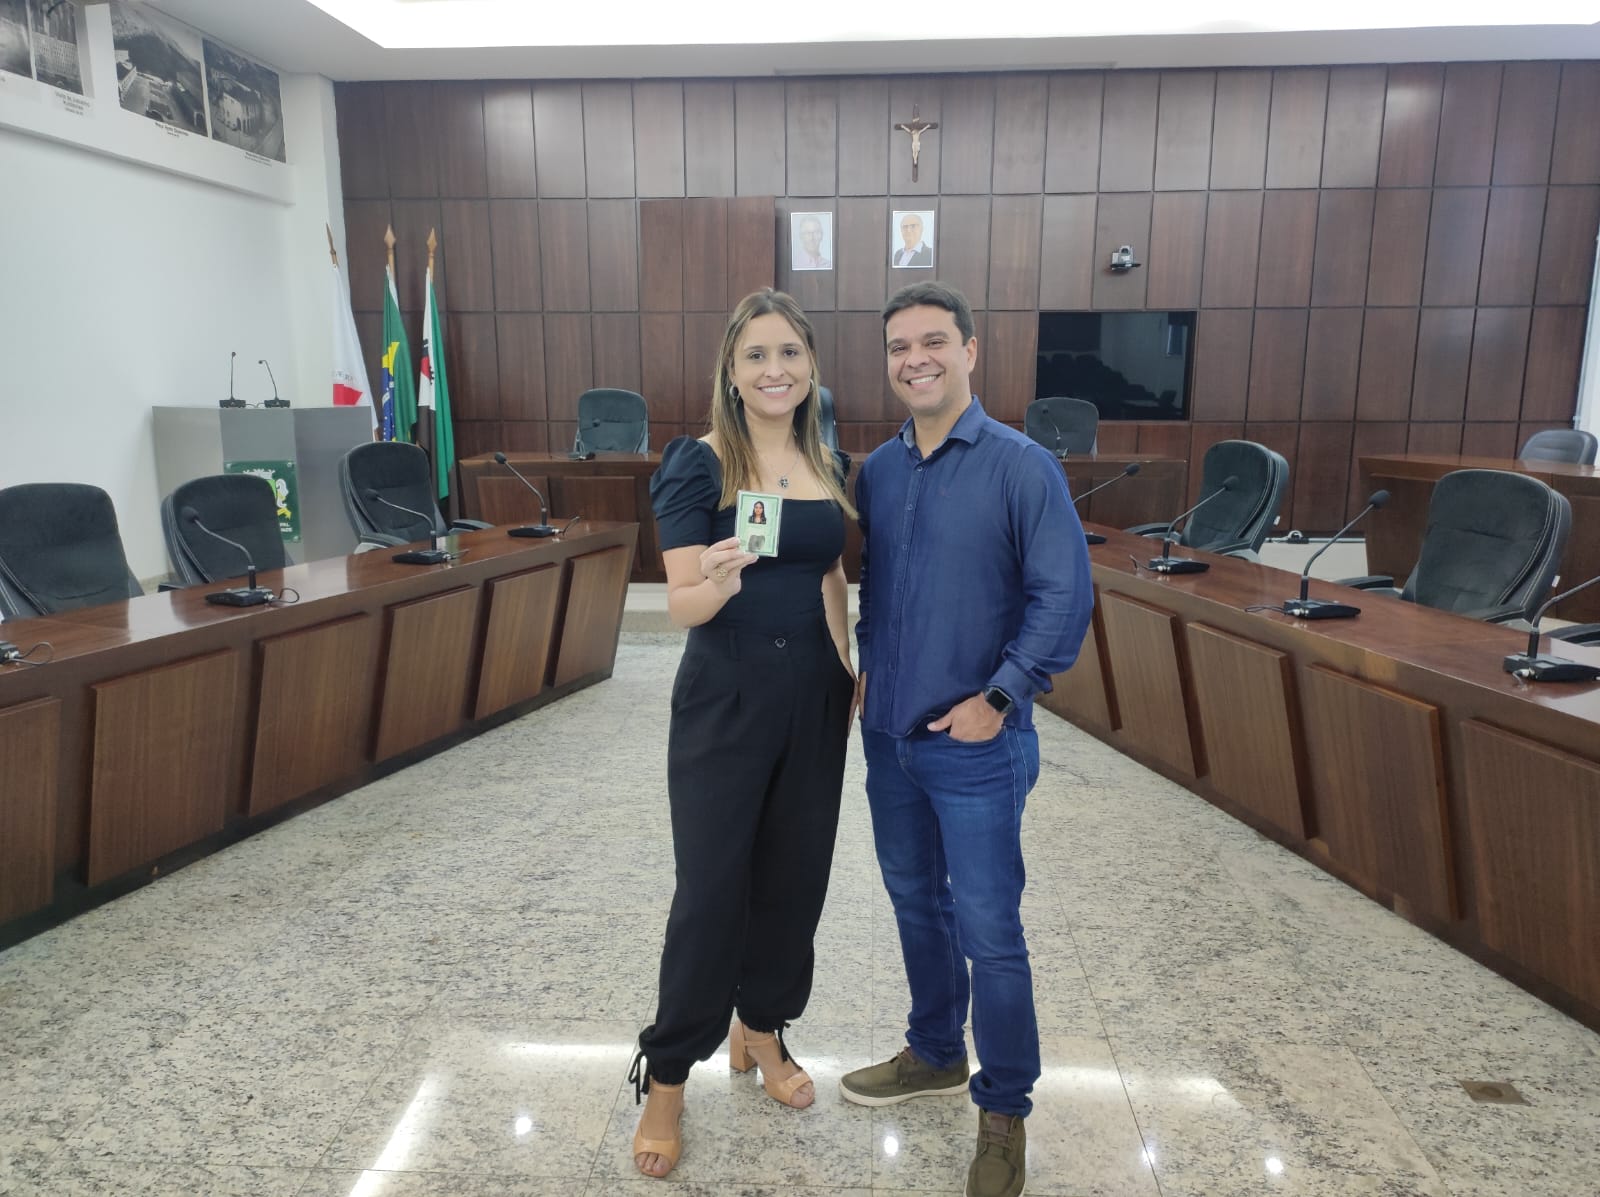 Câmara Municipal de João Monlevade vai emitir 1000 identidades no Cidadão Legal